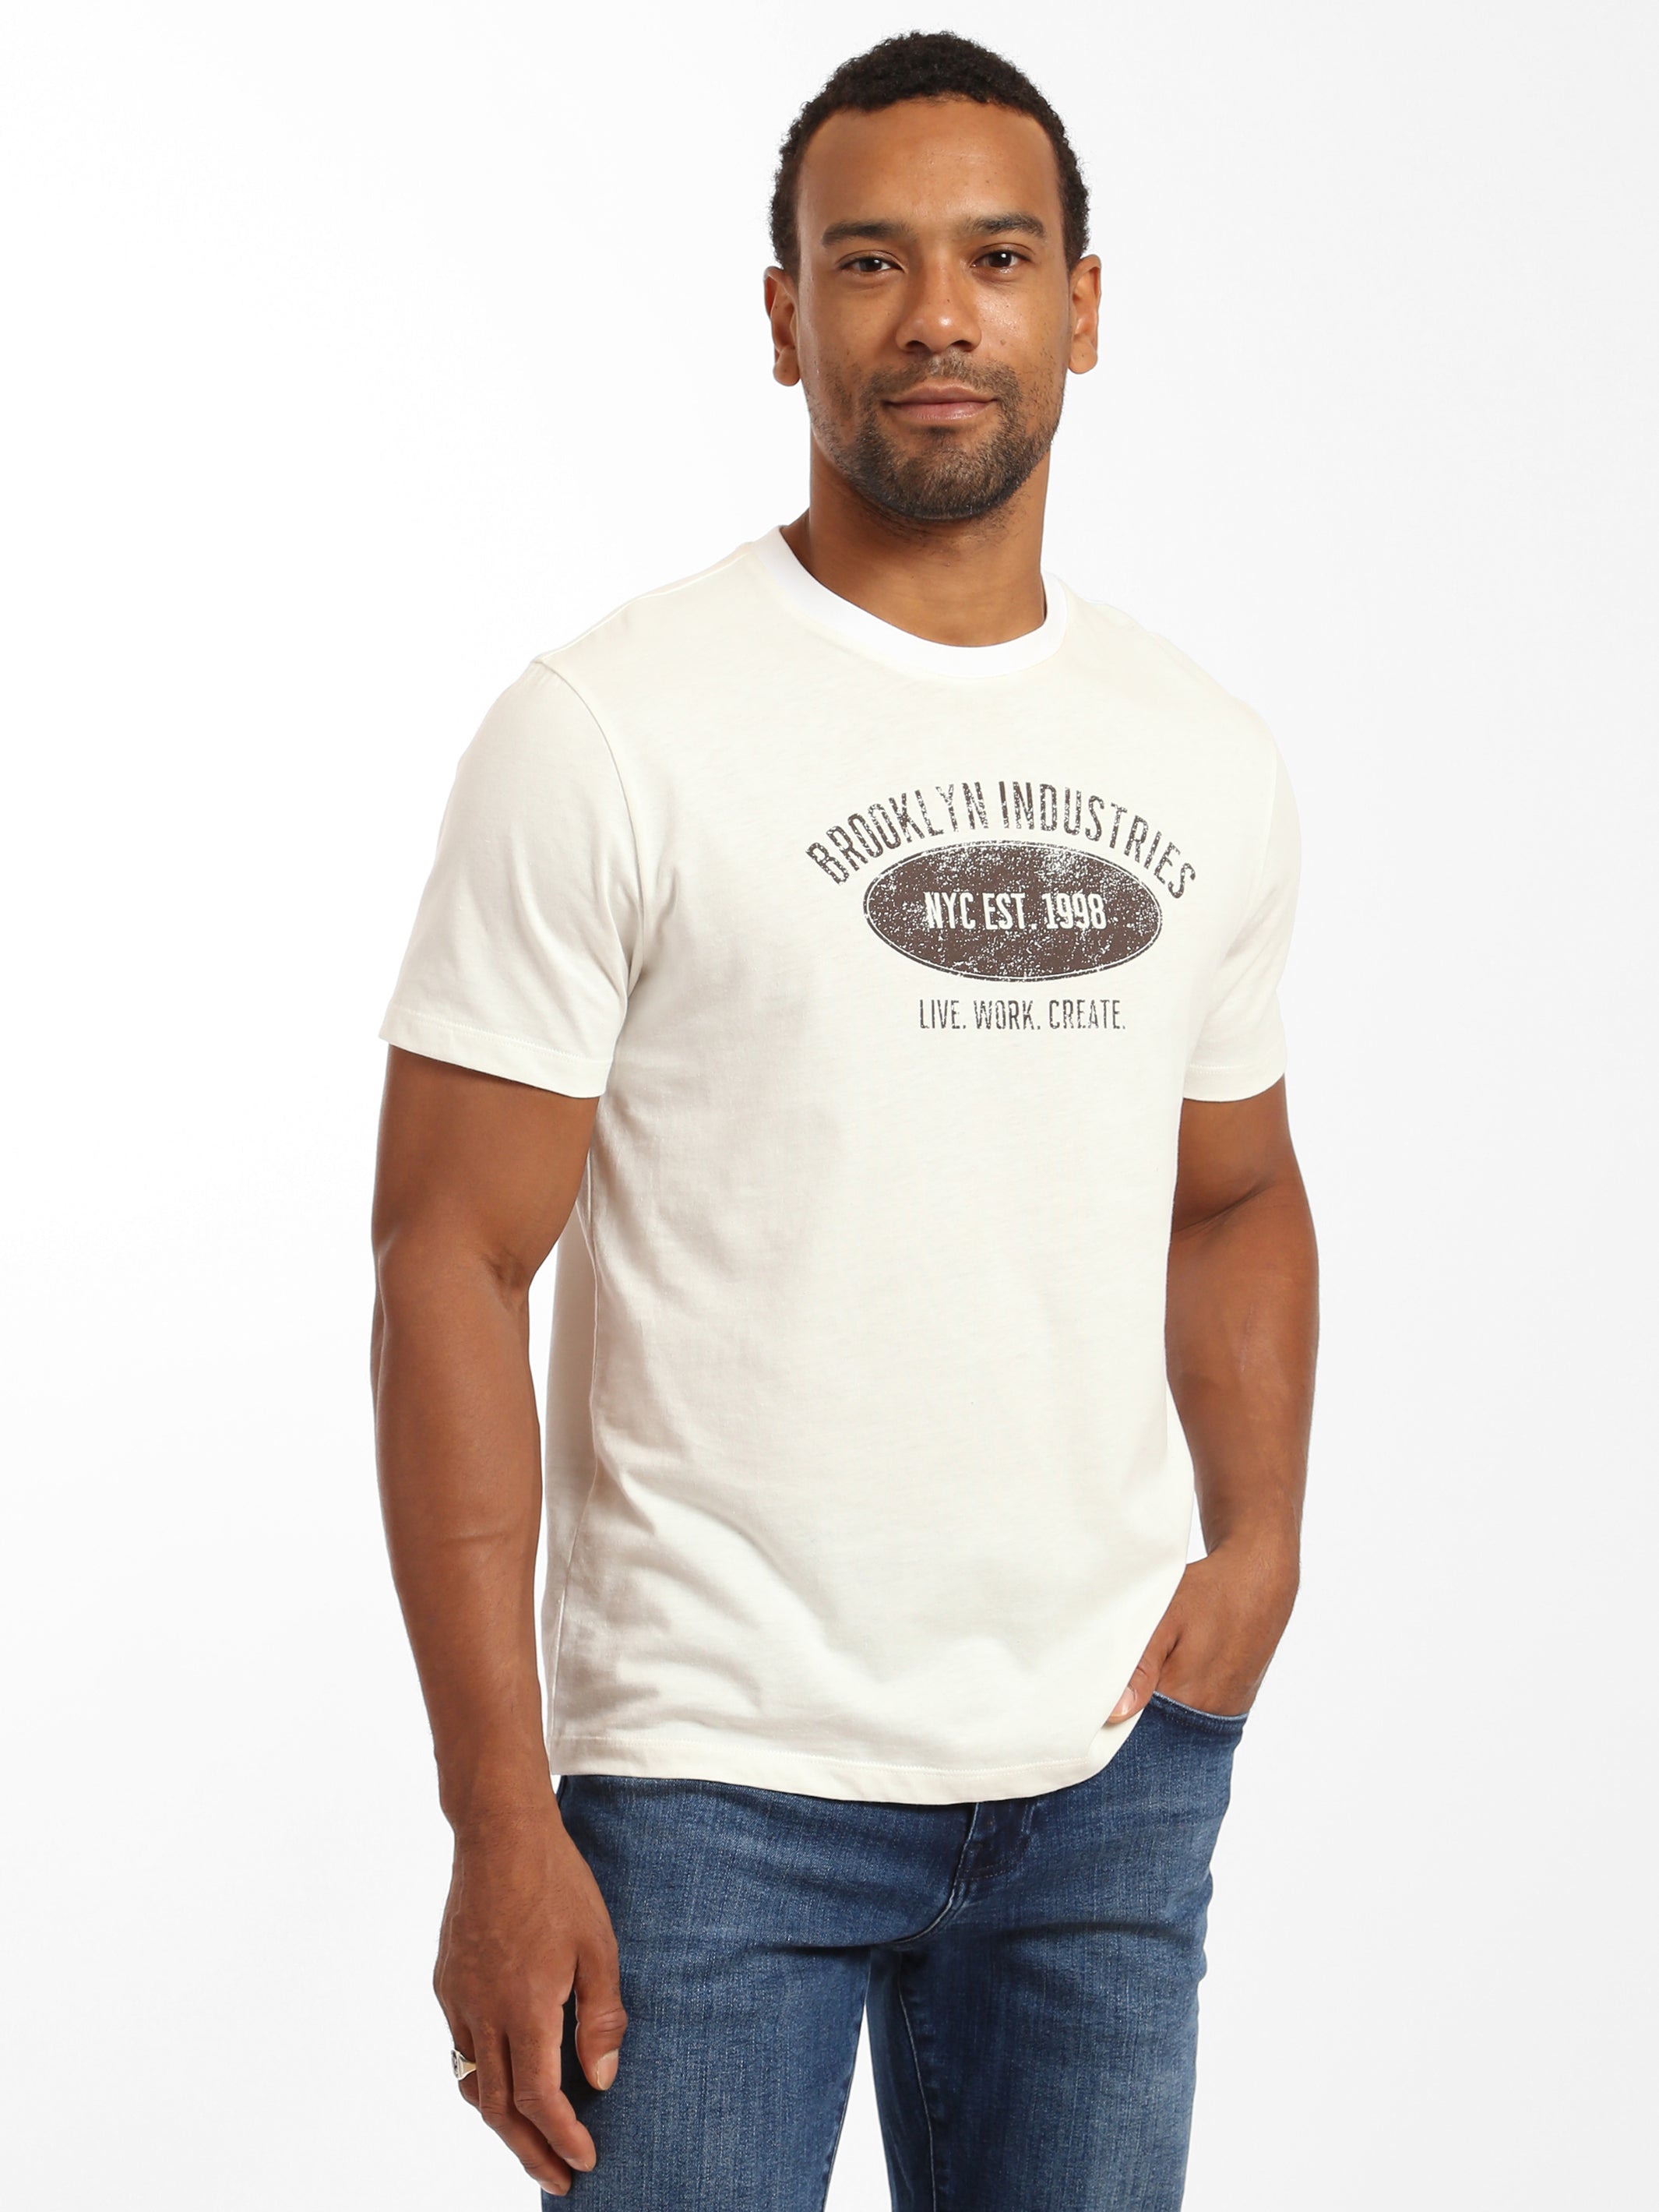 Men's BKI EST. 1988 Crew Neck T-shirt in Antique White - BROOKLYN INDUSTRIES